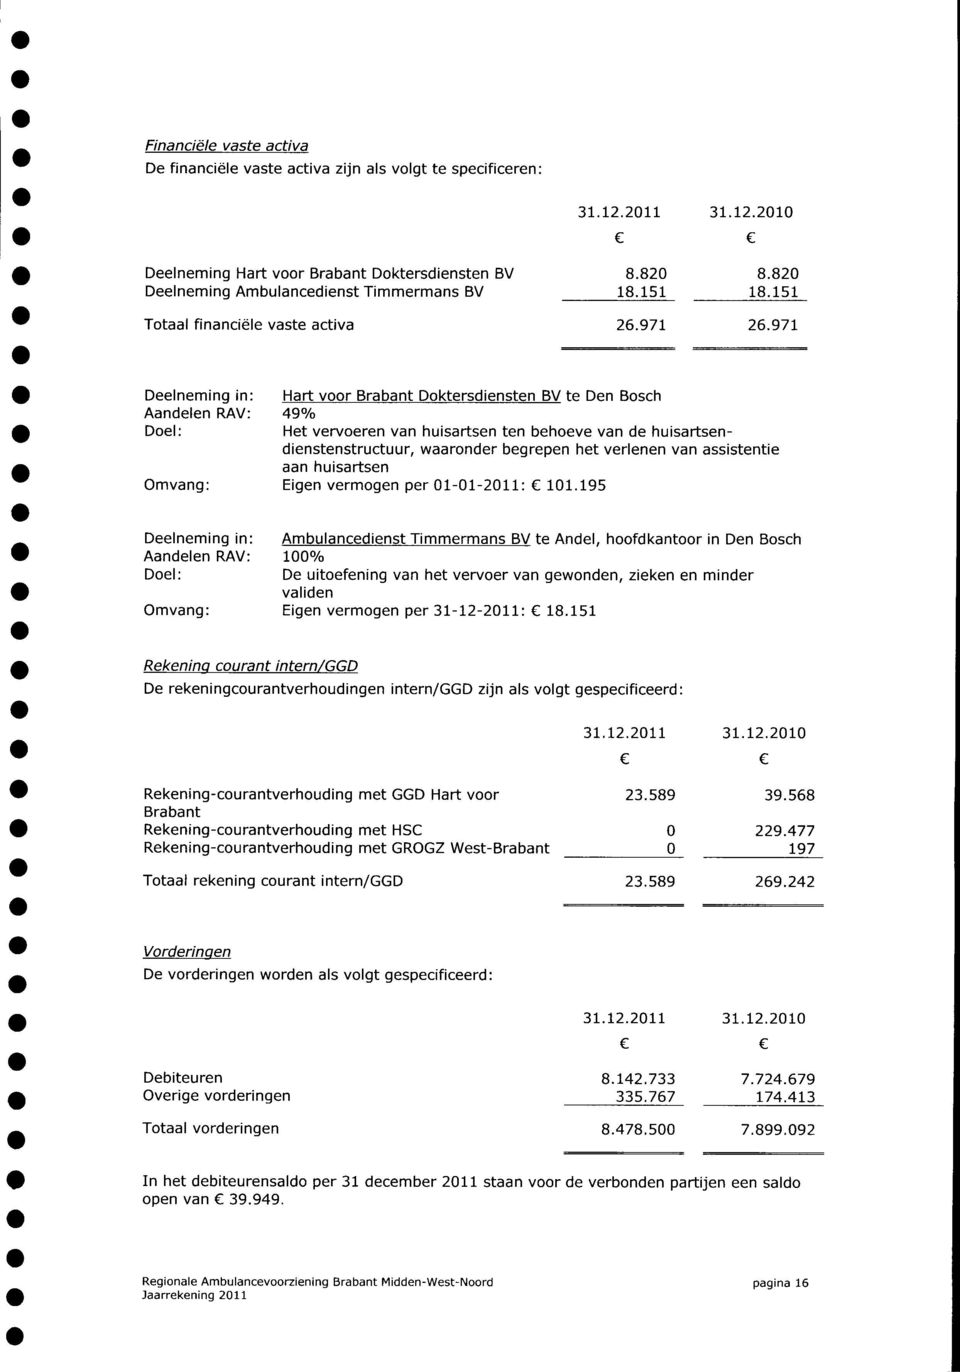 971 Deelneming in: Hart voor Brabant Doktersdiensten BV te Den Bosch Aandelen RAV: 49% Doel: Het vervoeren van huisartsen ten behoeve van de huisartsendienstenstructuur, waaronder begrepen het